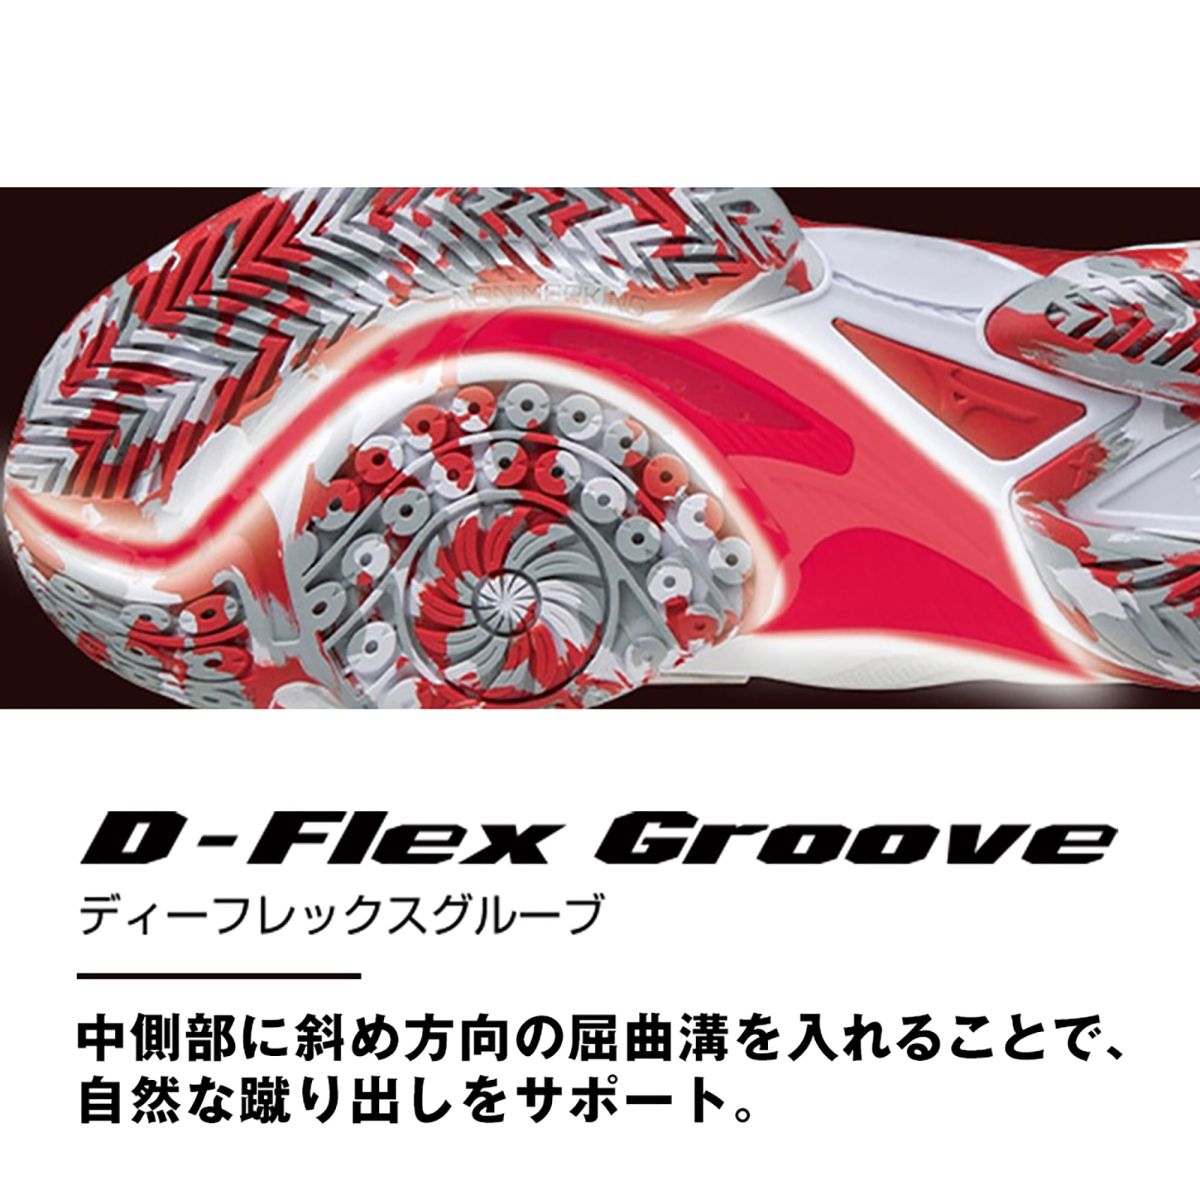 Giới thiệu công nghệ giày cầu lông Mizuno D-FLEX GROOVE 